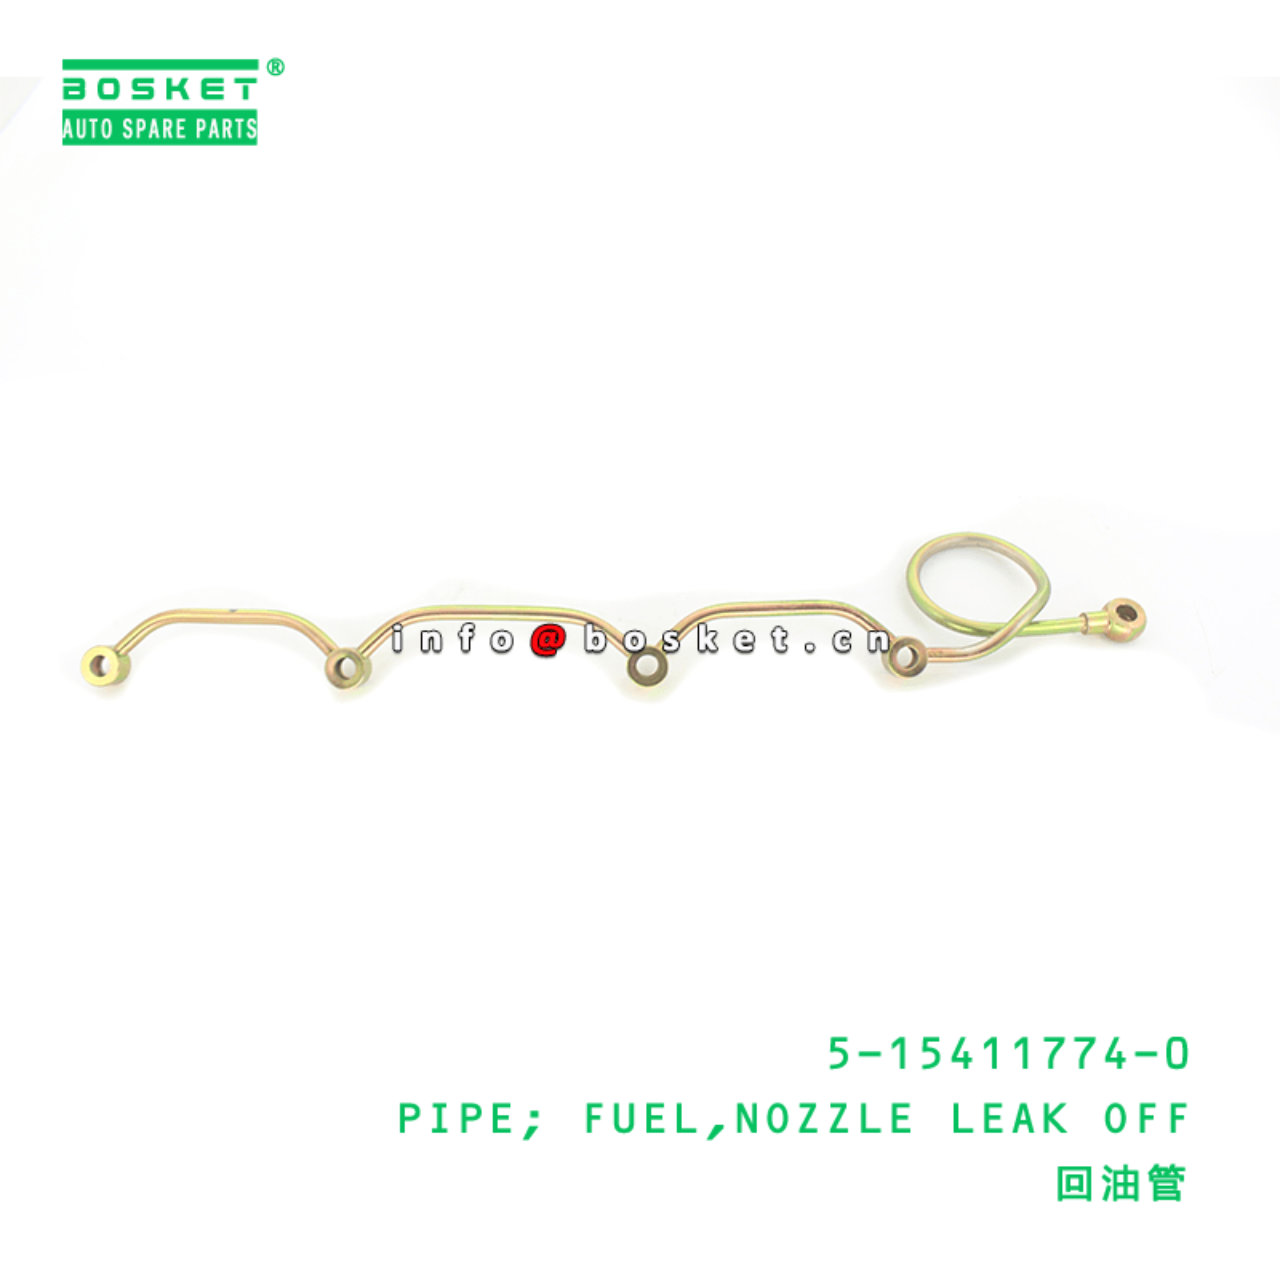 5-15411774-0 Nozzle Leak Off Fuel Pipe 5154117740 Suitable for ISUZU PKG C240